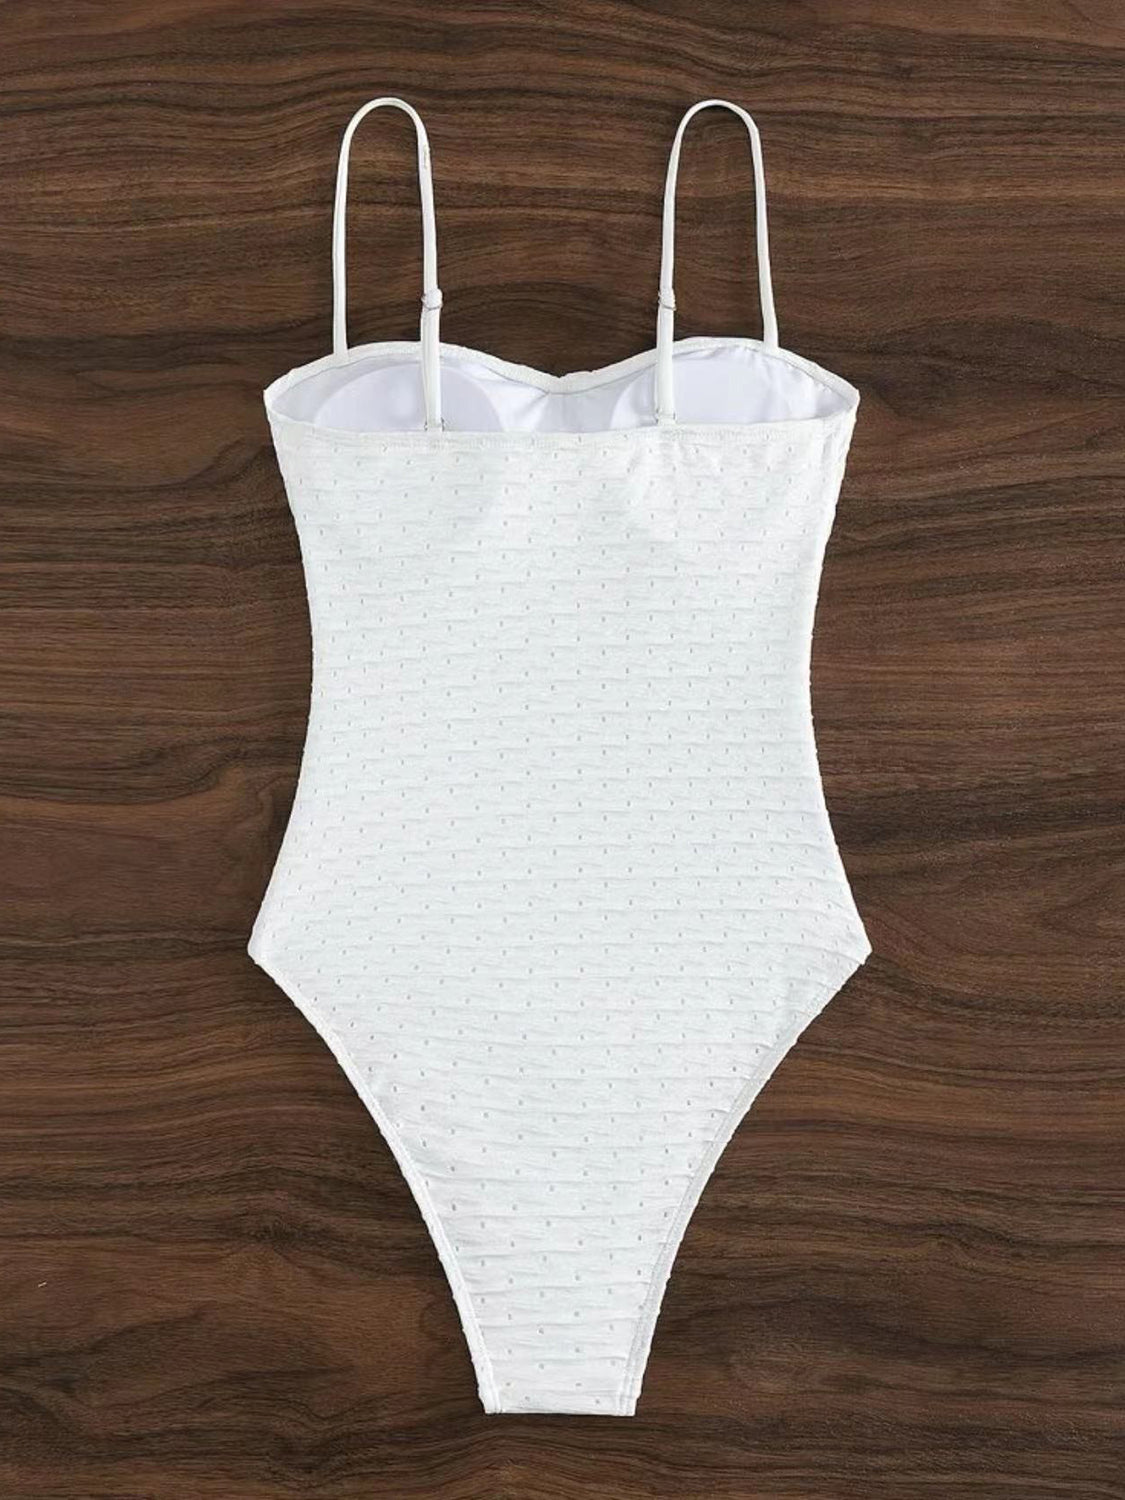 TEEK - White Sweetheart Neck Spaghetti Strap Swimsuit SWIMWEAR TEEK Trend   